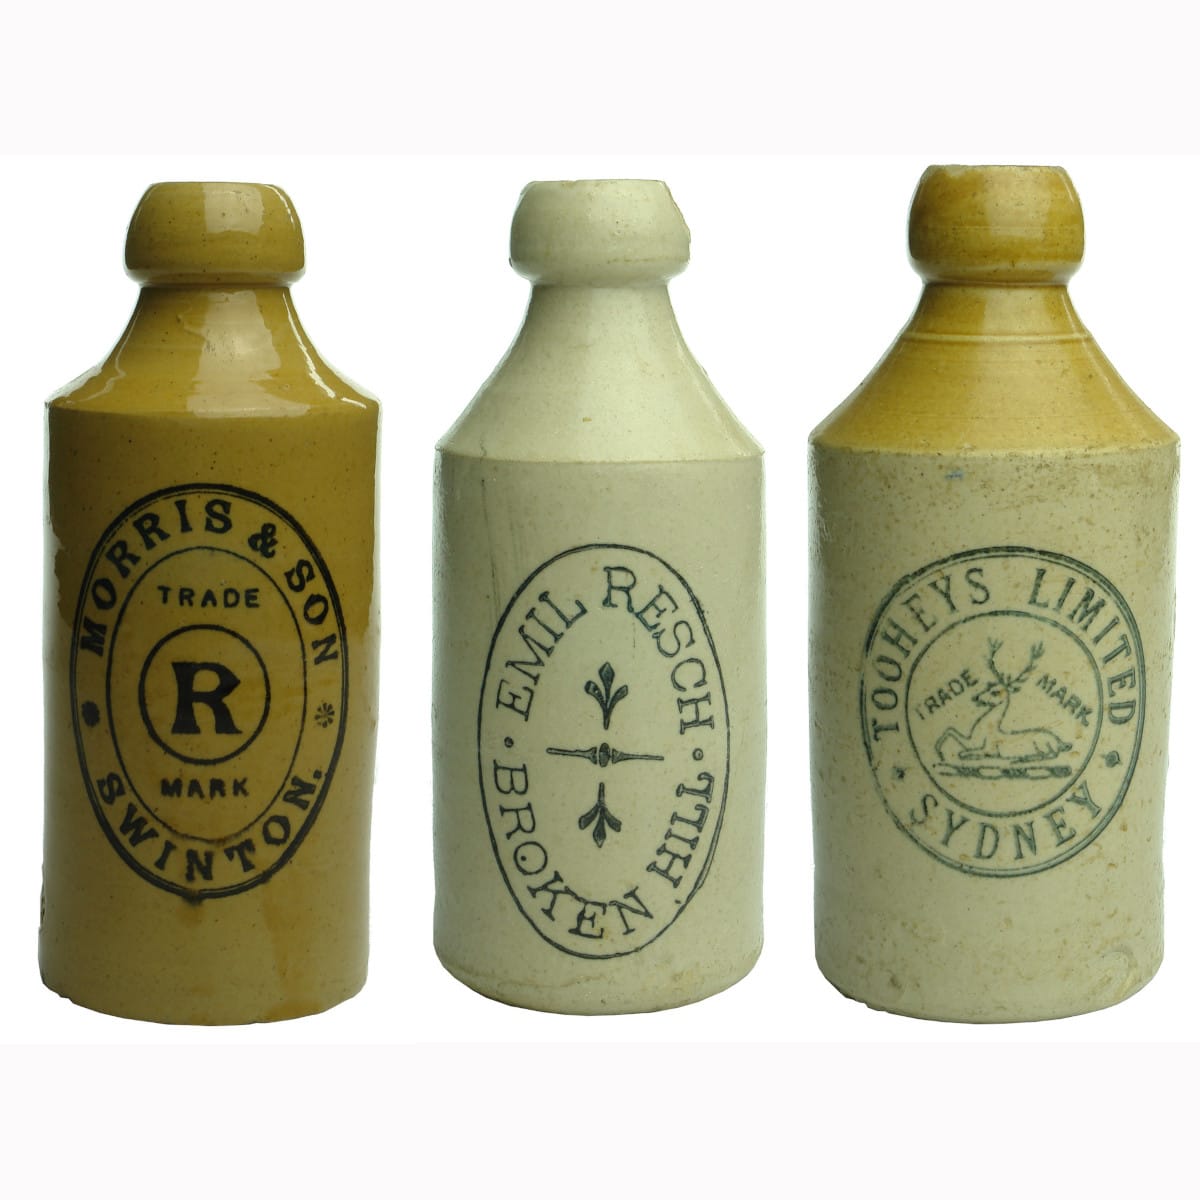 Three Ginger Beers: Morris, Swinton; Resch, Broken Hill & Tooheys, Sydney.